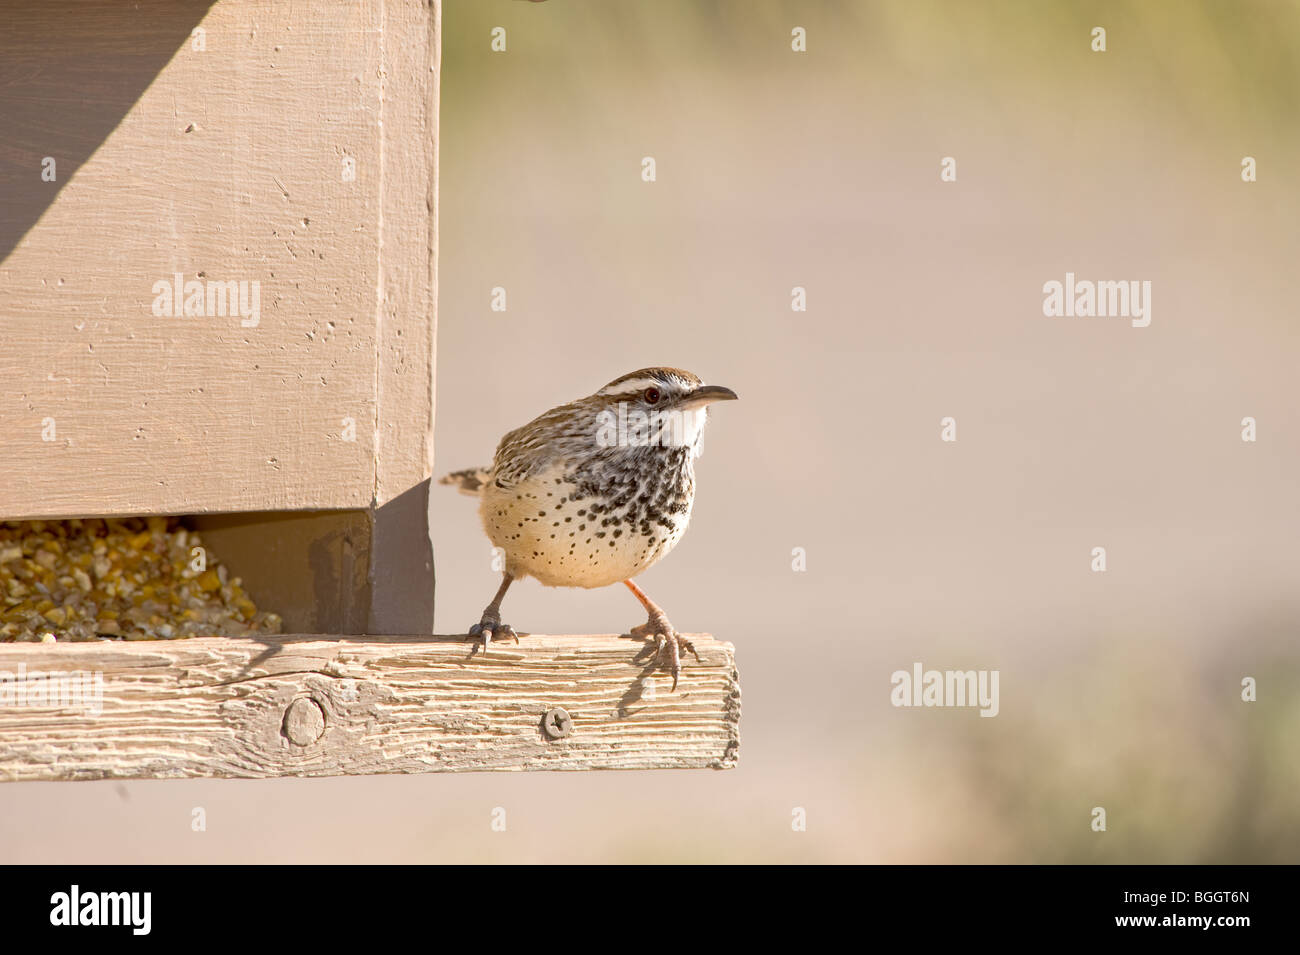 Un oiseau sur un convoyeur d'oiseaux à la recherche d'un snack Banque D'Images